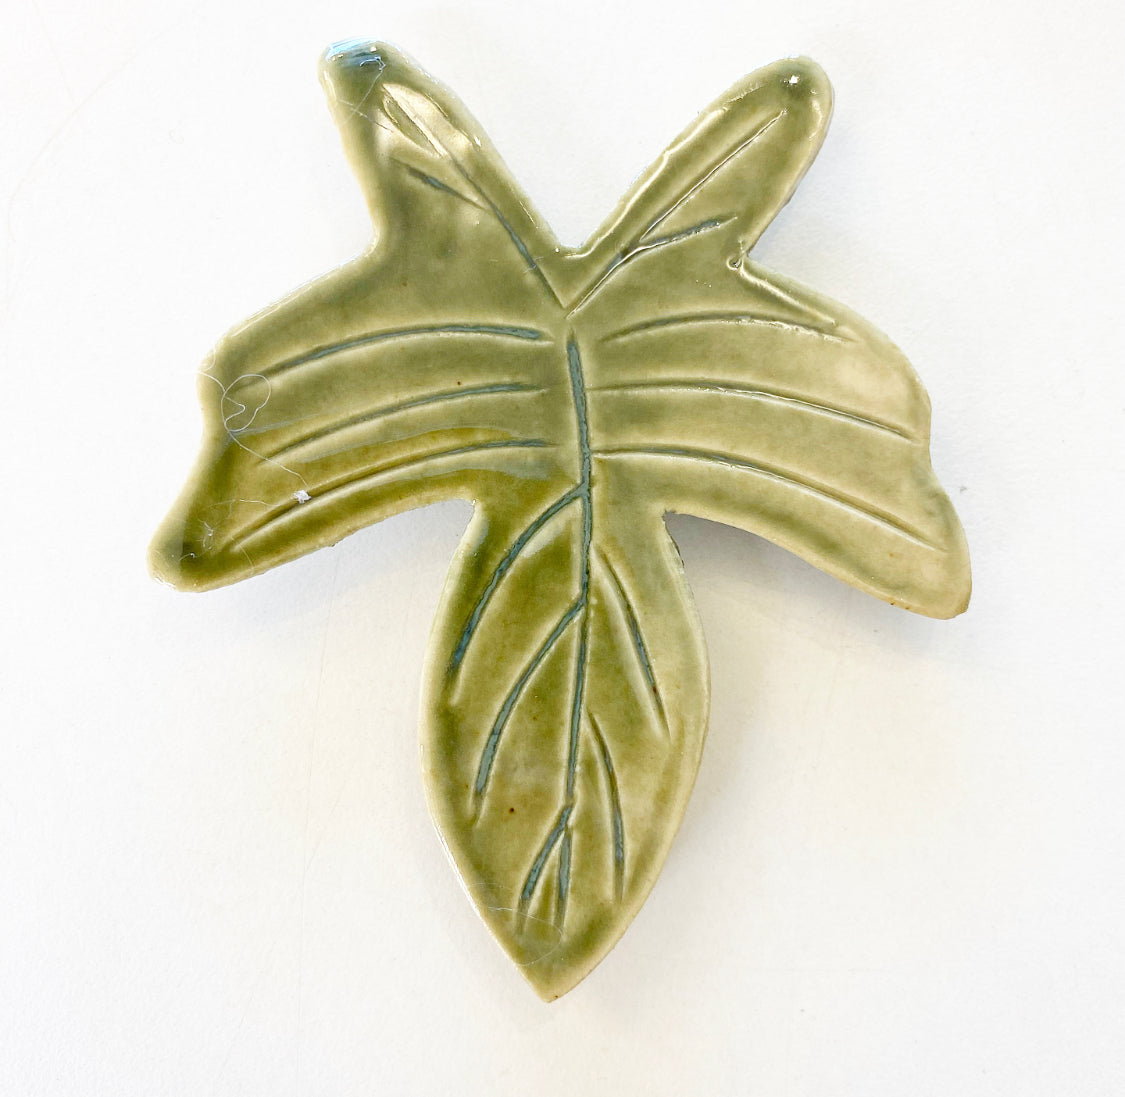 Ceramic Leaf Magnets